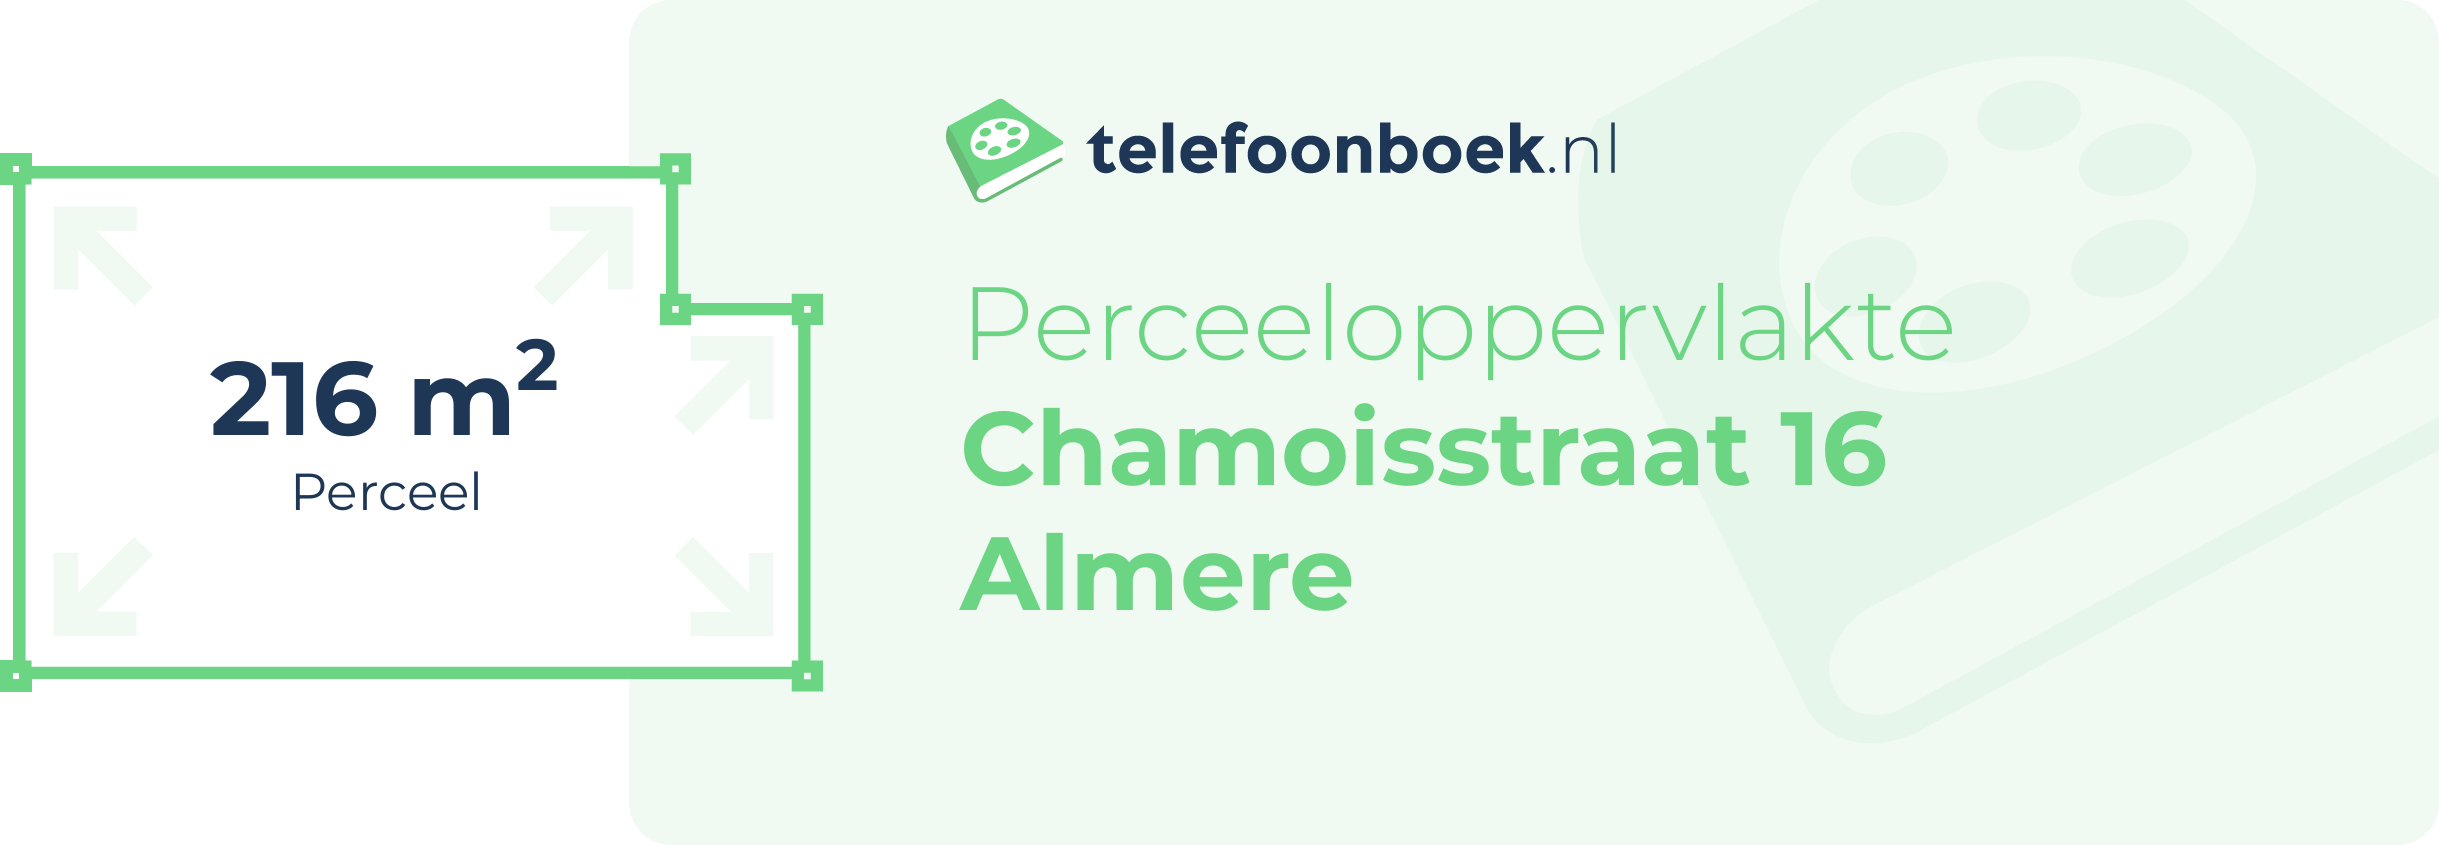 Perceeloppervlakte Chamoisstraat 16 Almere